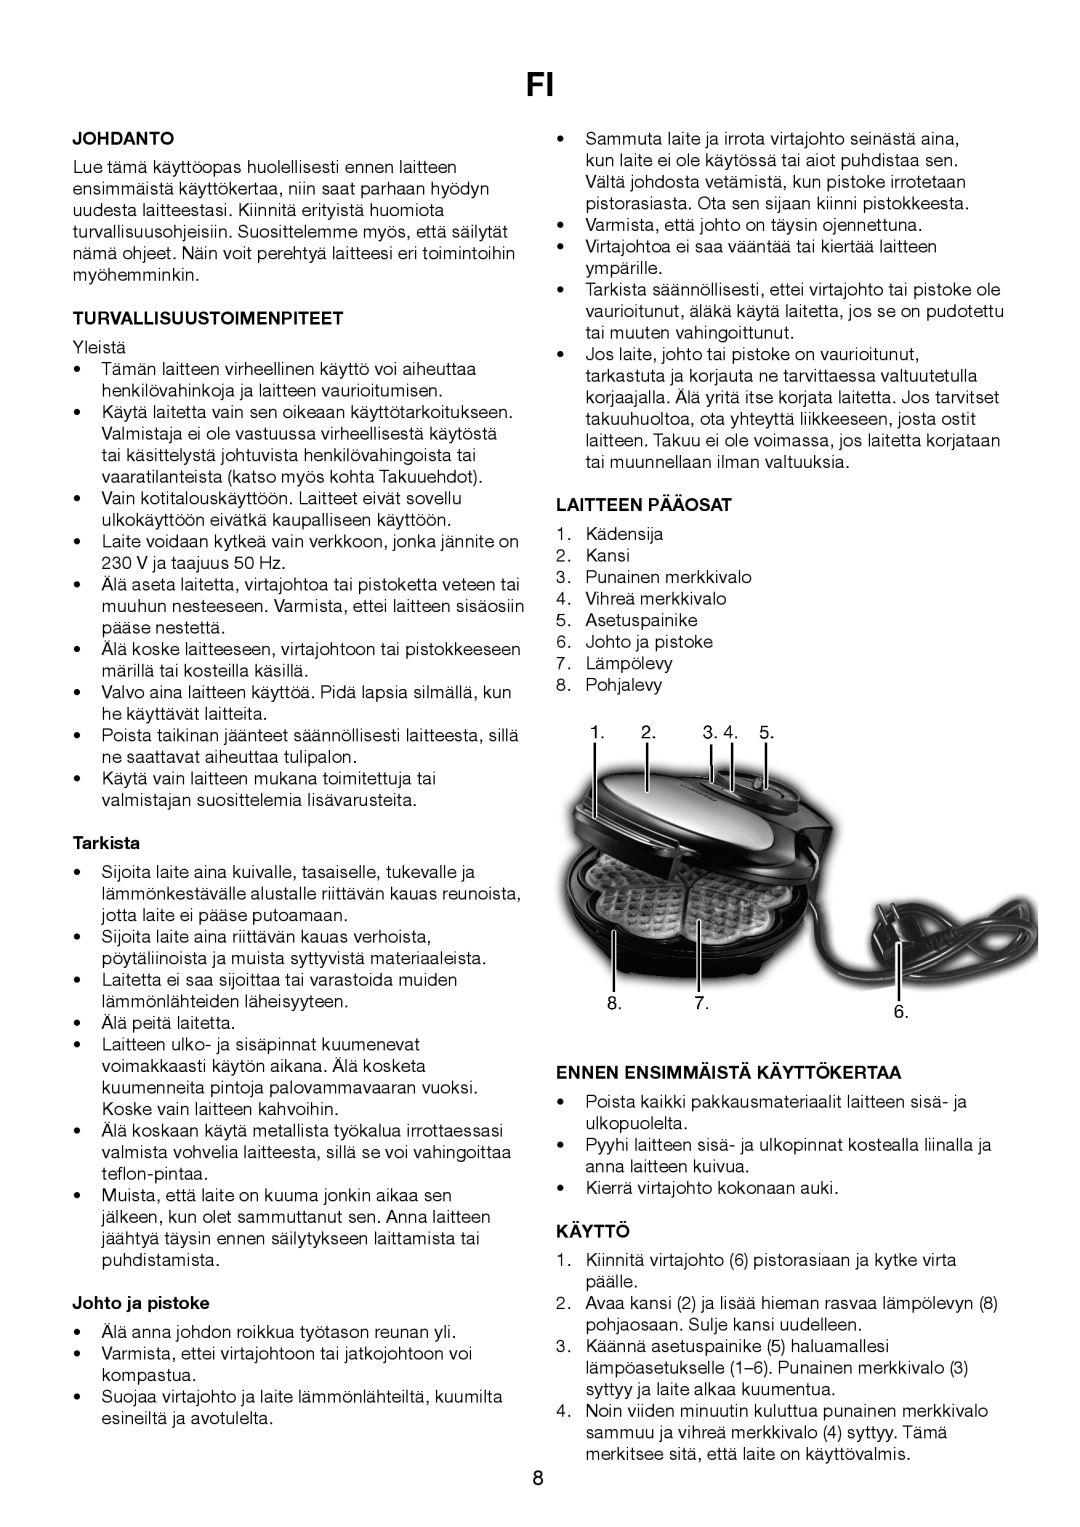 Melissa 643-194 manual Johdanto, Turvallisuustoimenpiteet, Tarkista, Johto ja pistoke, Laitteen Pääosat, Käyttö 